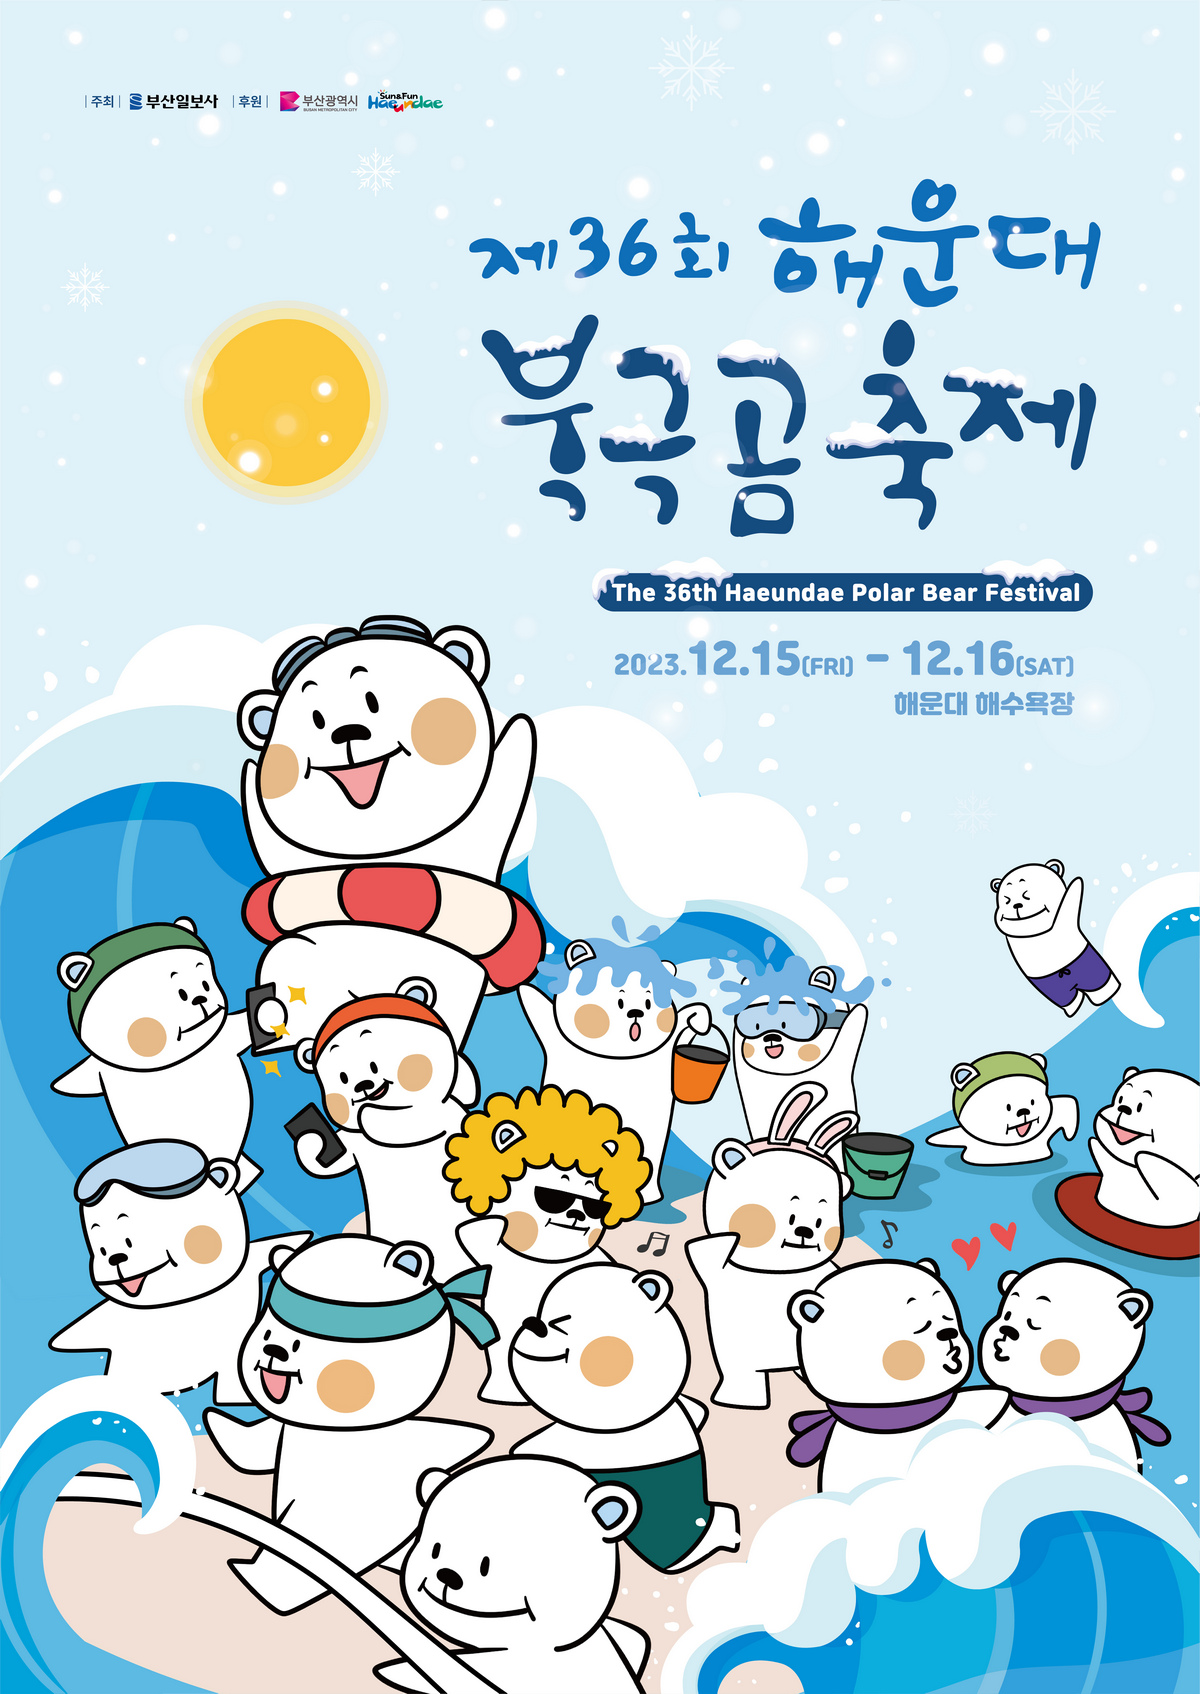 Festivals The 36th Haeundae Polar Bear Festival